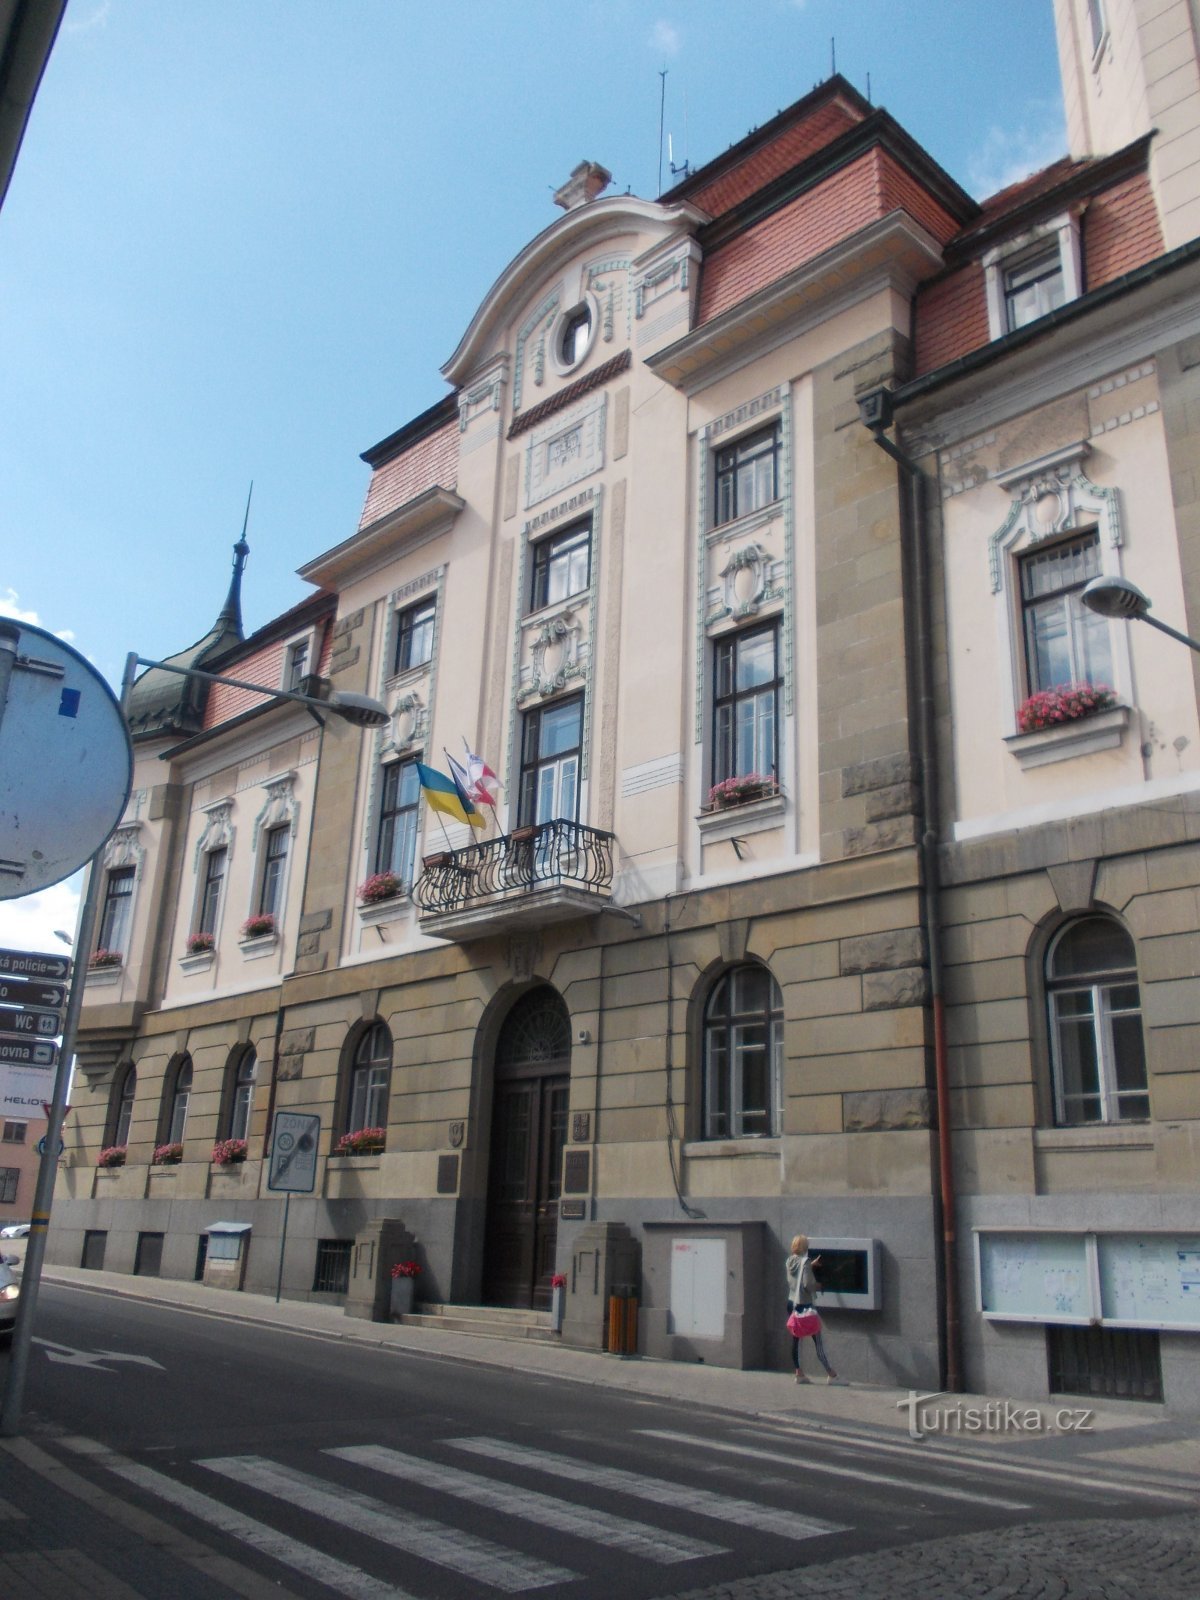 fața clădirii primăriei din strada Břežanská